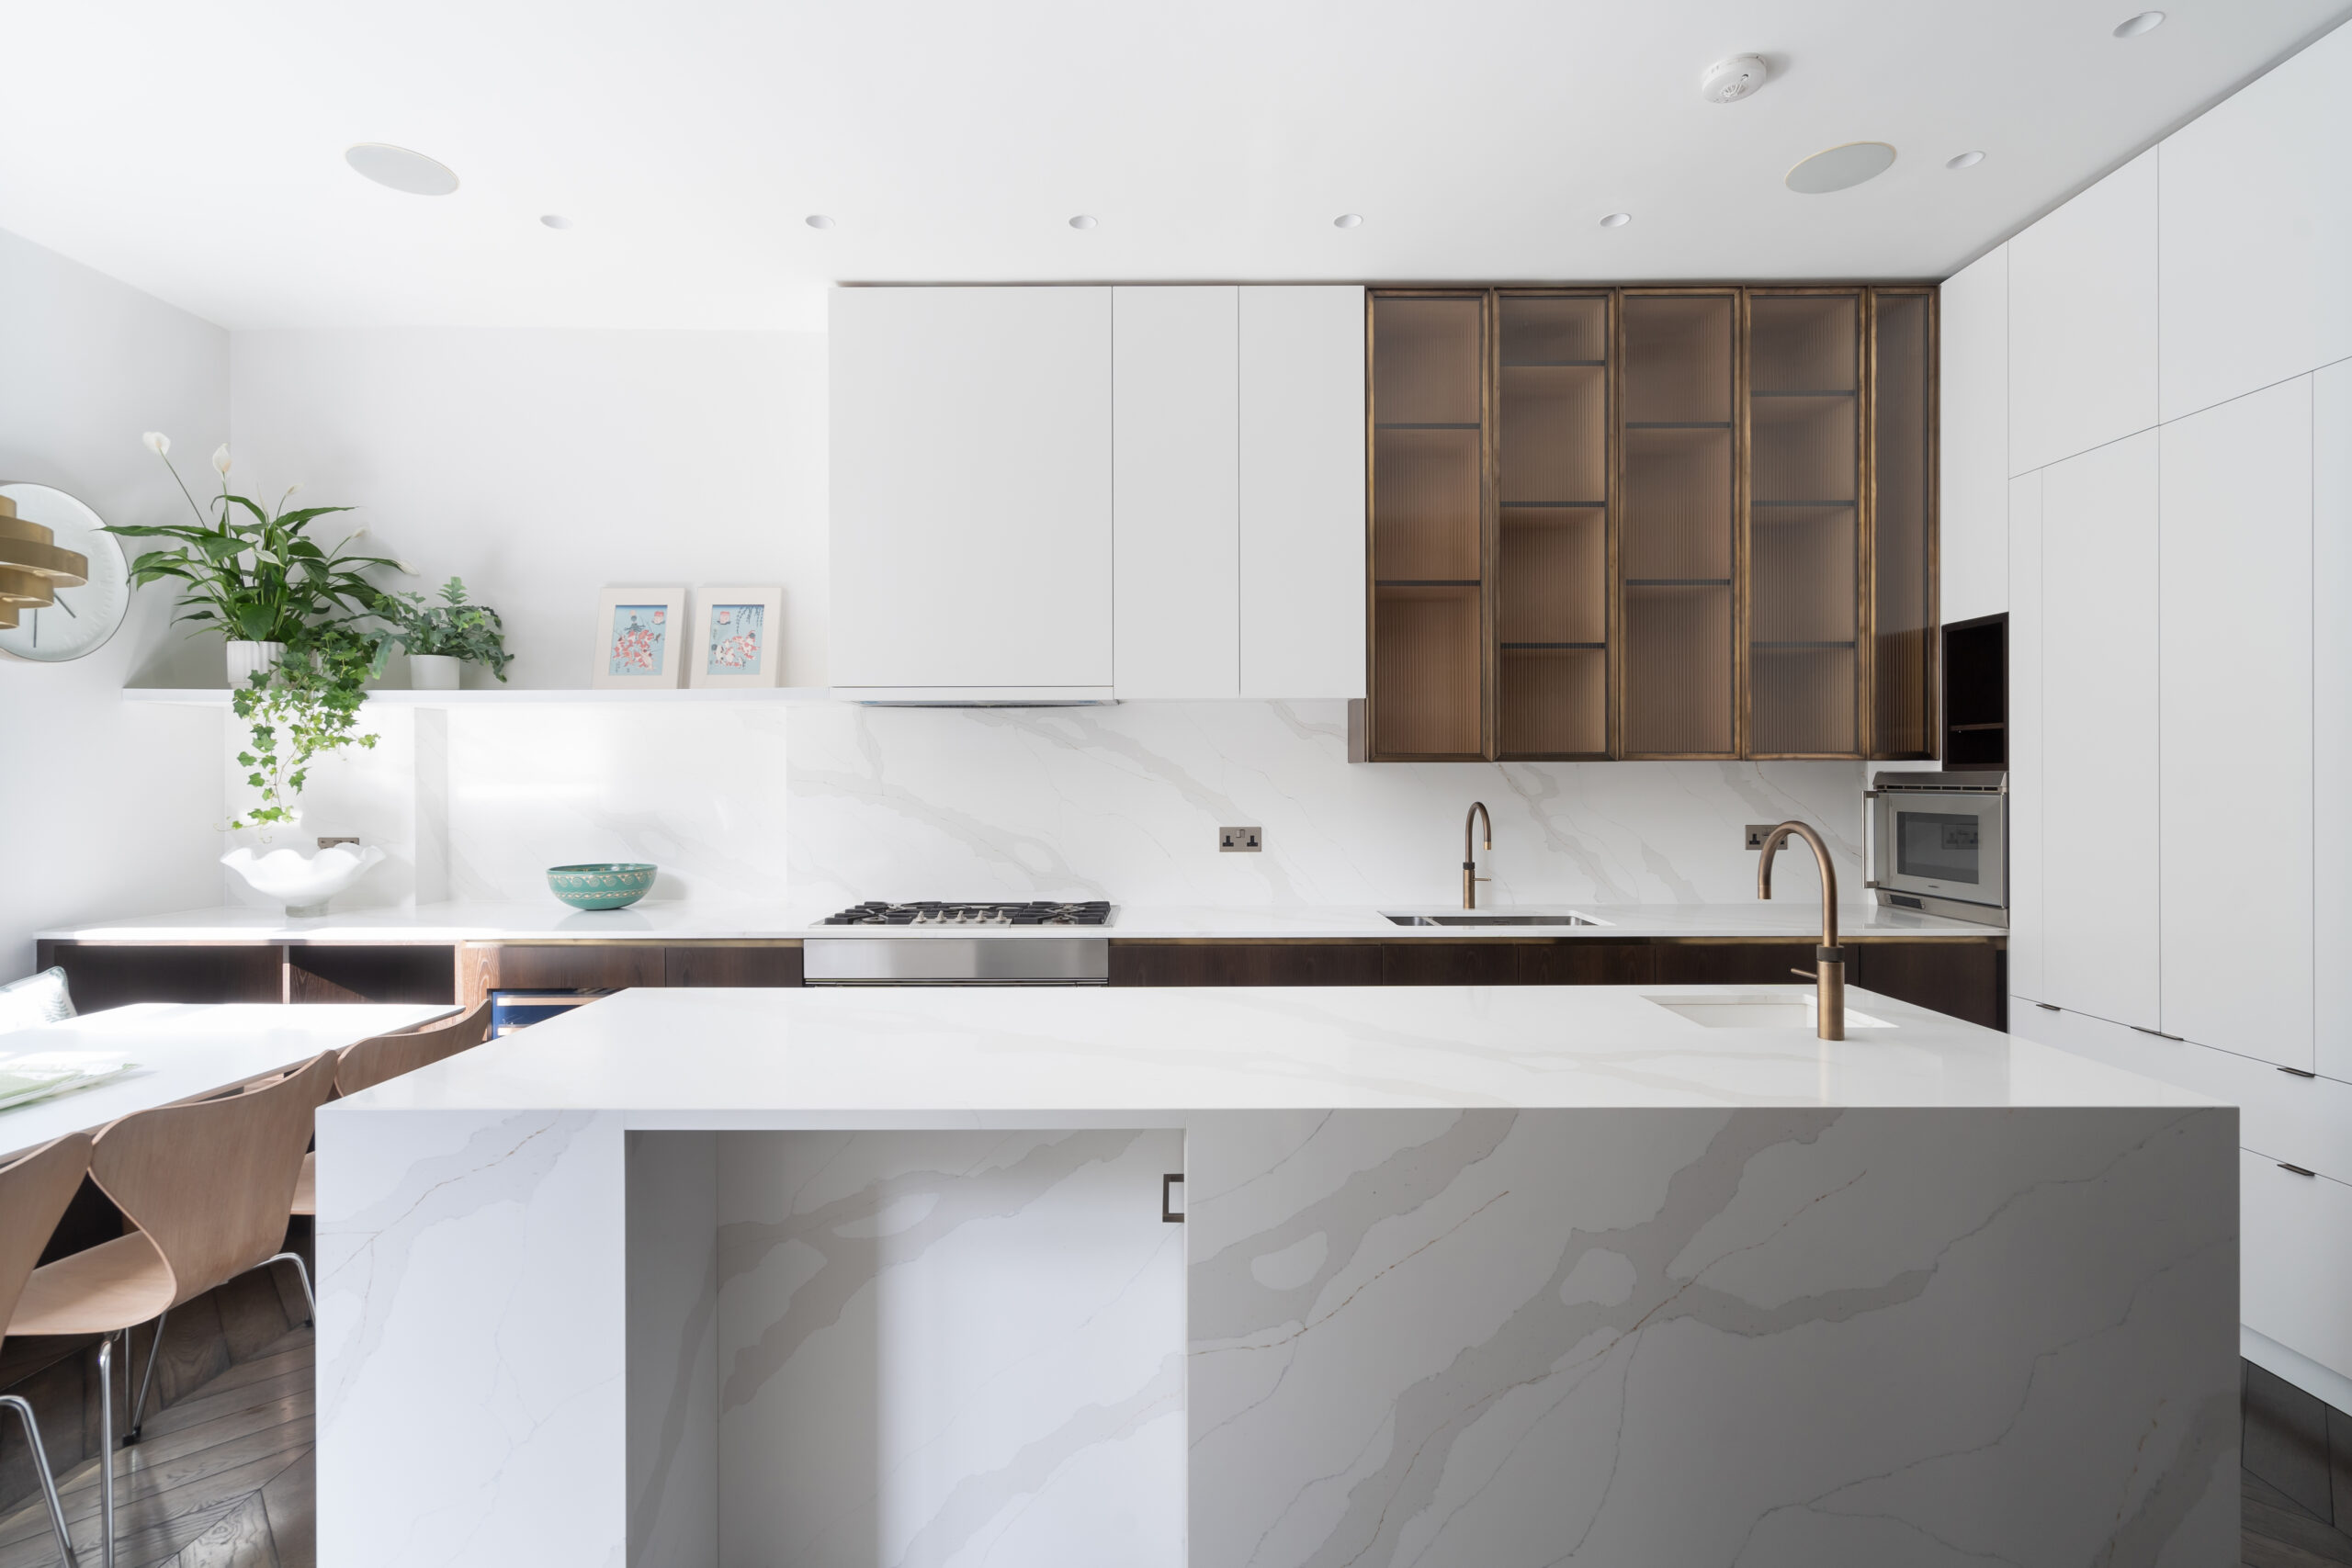 A modern marble kitchen